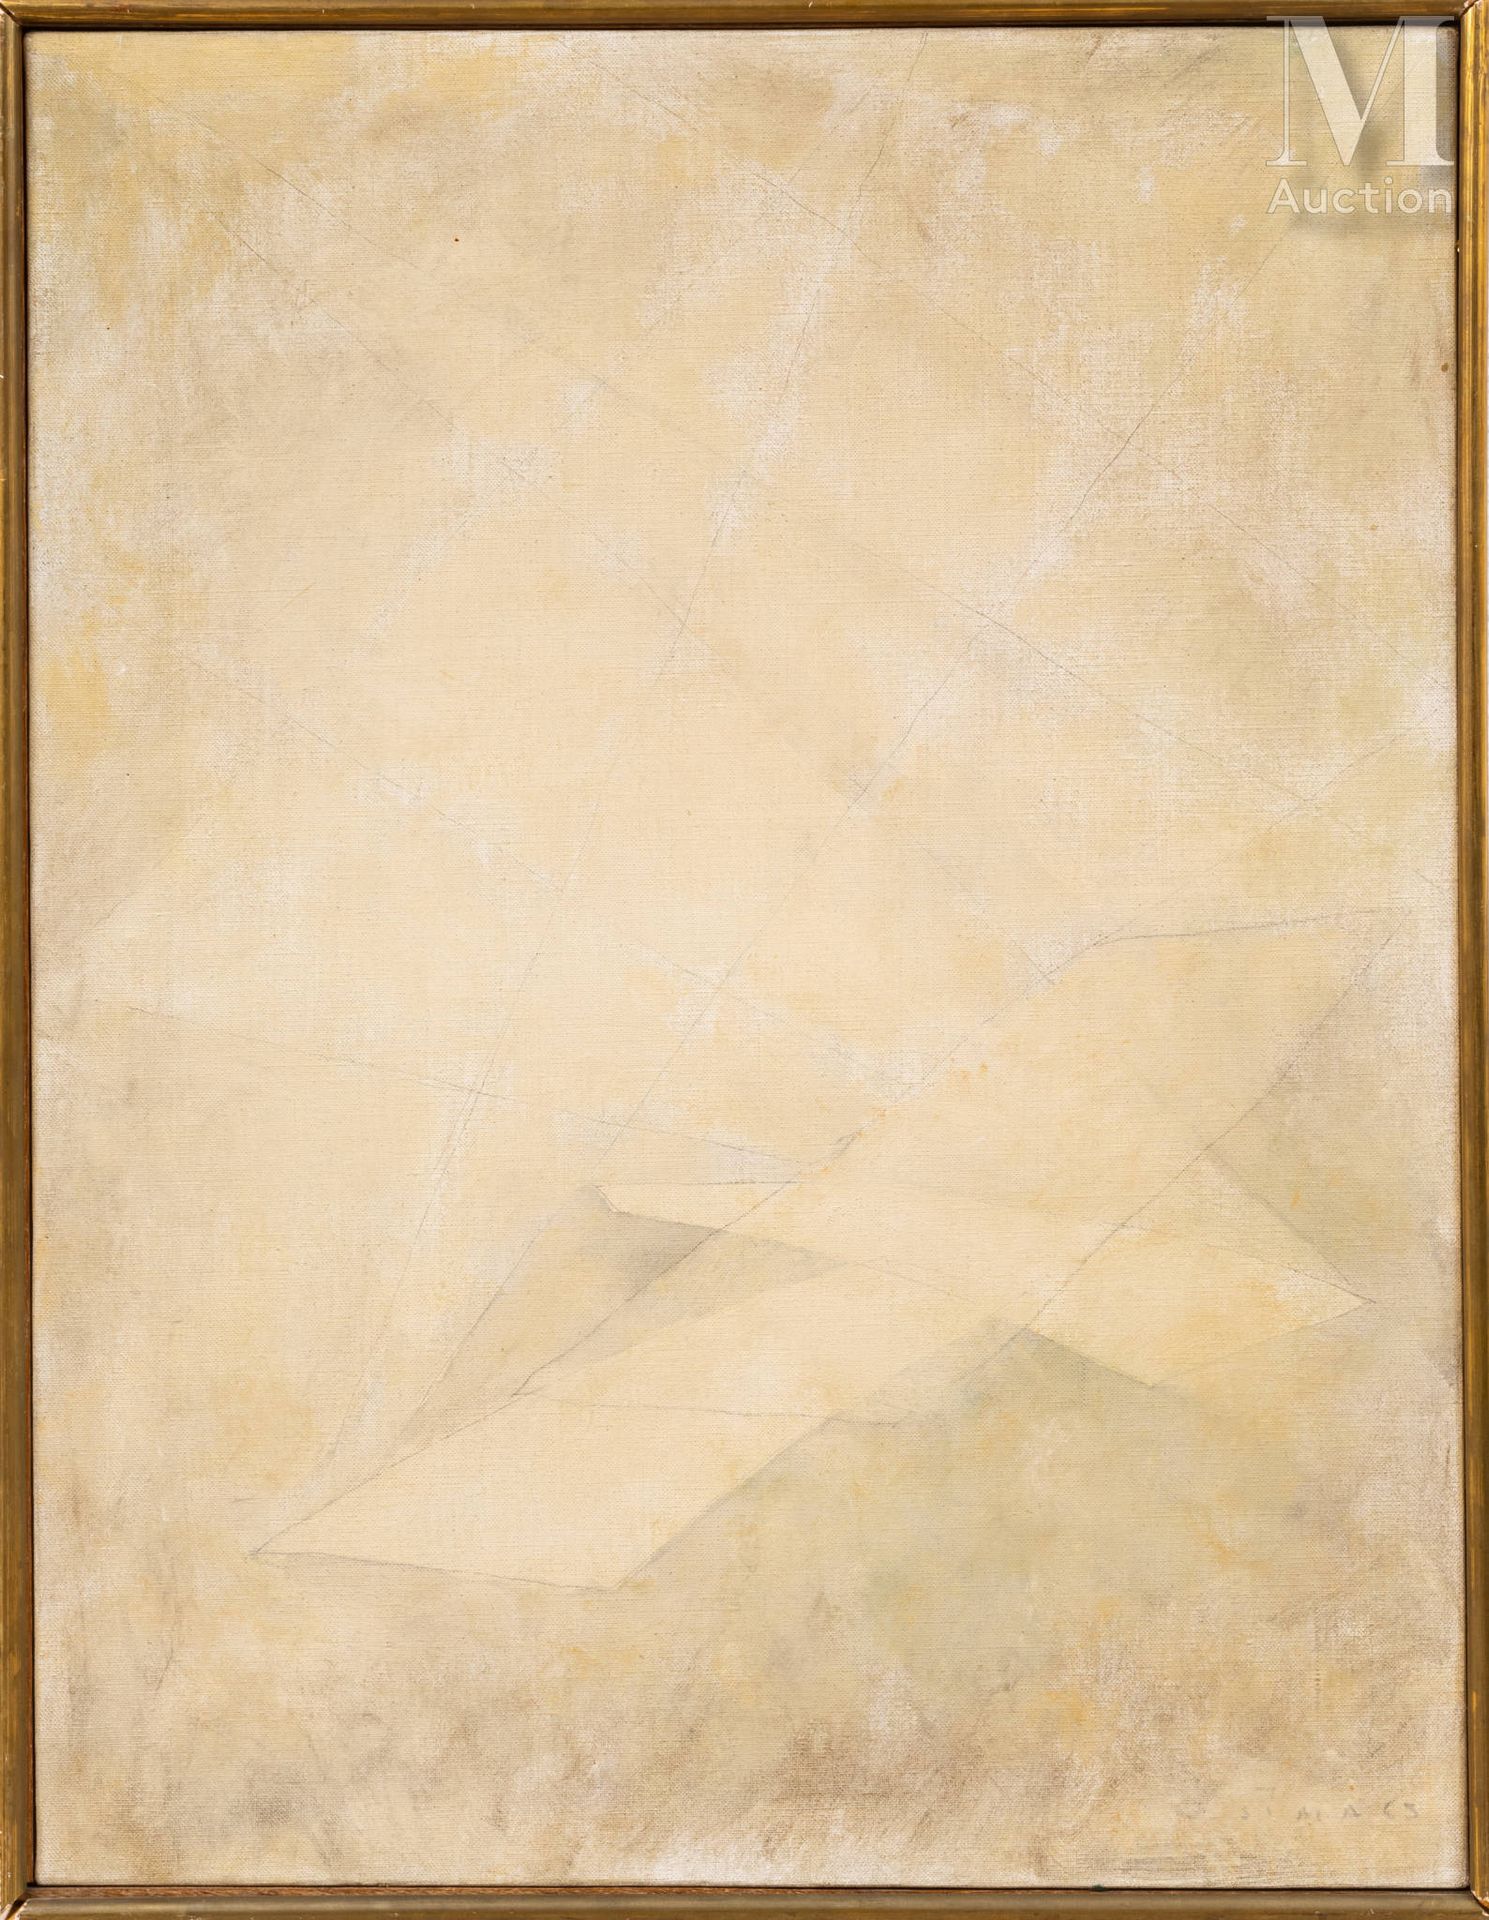 Josef SIMA (1891-1971) Composición, 1965

Óleo sobre lienzo firmado y fechado ab&hellip;